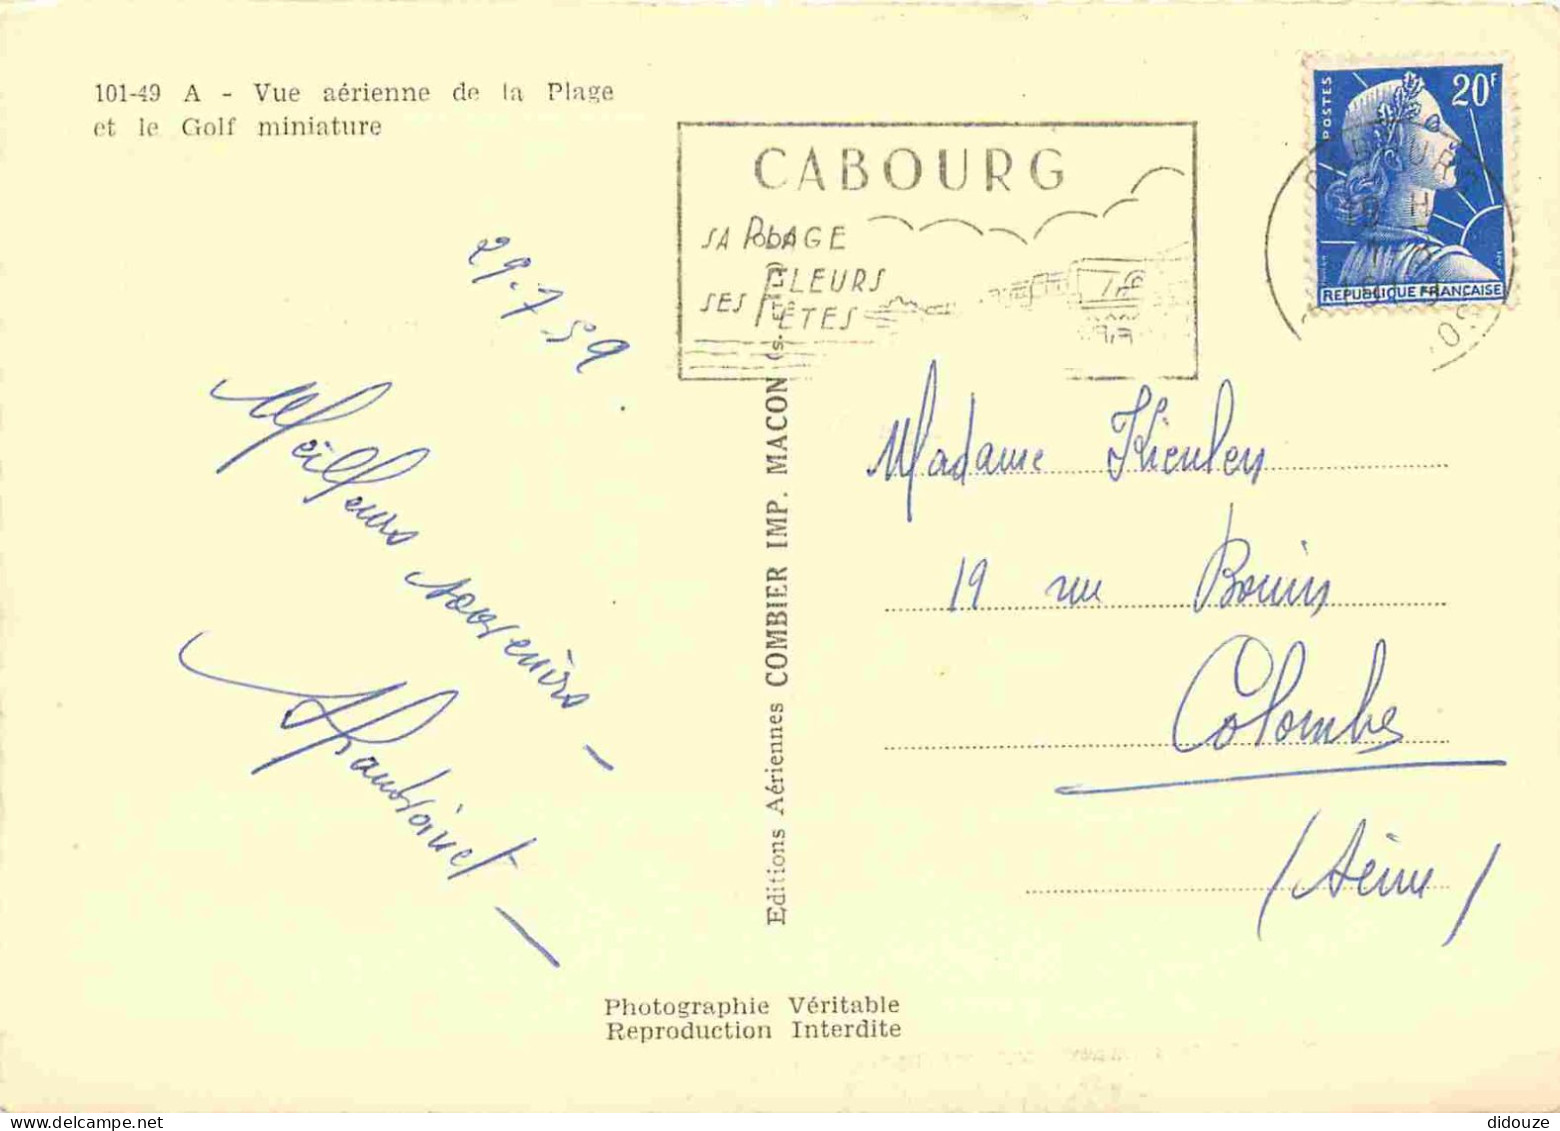 14 - Cabourg - Vue Aérienne De La Plage Et Le Golf Miniature - Mention Photographie Véritable - Carte Dentelée - CPSM Gr - Cabourg